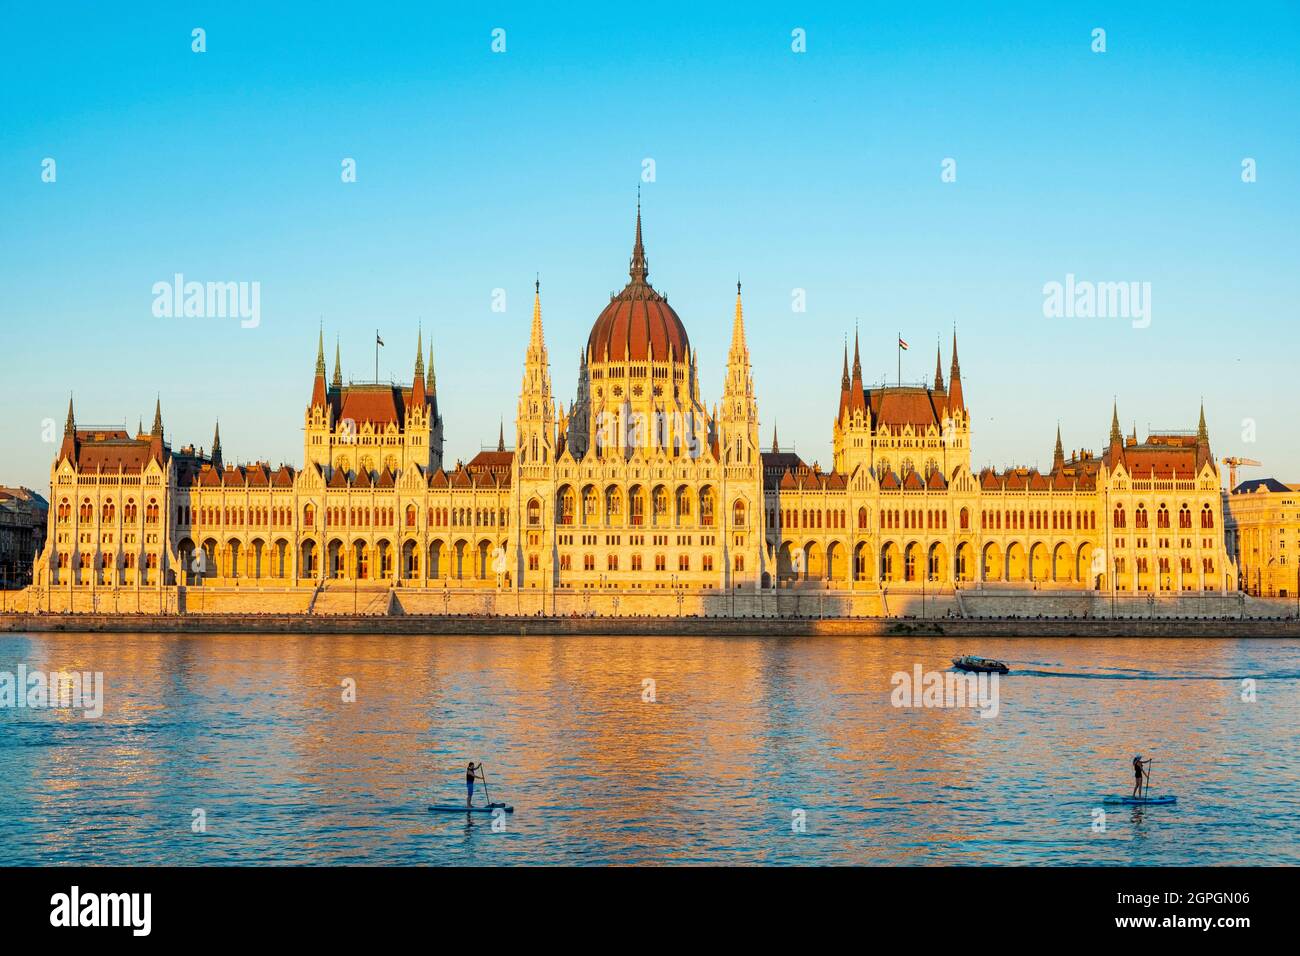 La Hongrie, Budapest, classée au patrimoine mondial par l'UNESCO, le district Pest, le Parlement hongrois sur les rives du Danube Banque D'Images